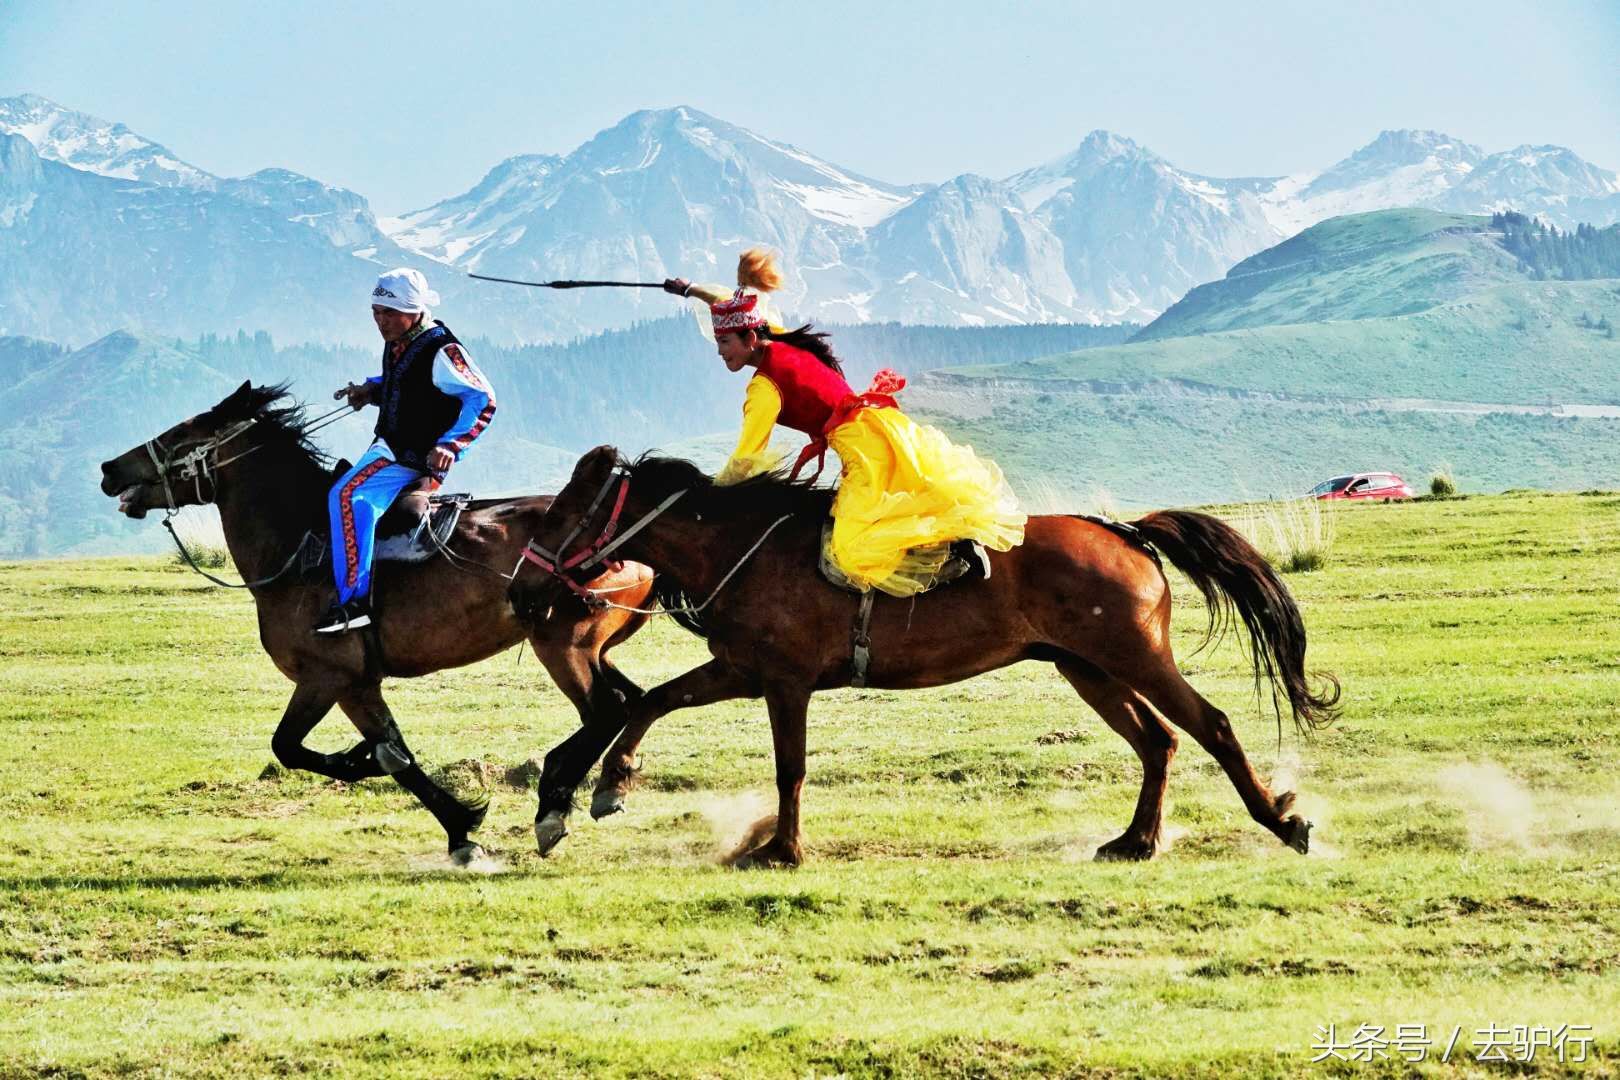 昭苏草原上的牧马人重生:旅游激活游牧文化,从